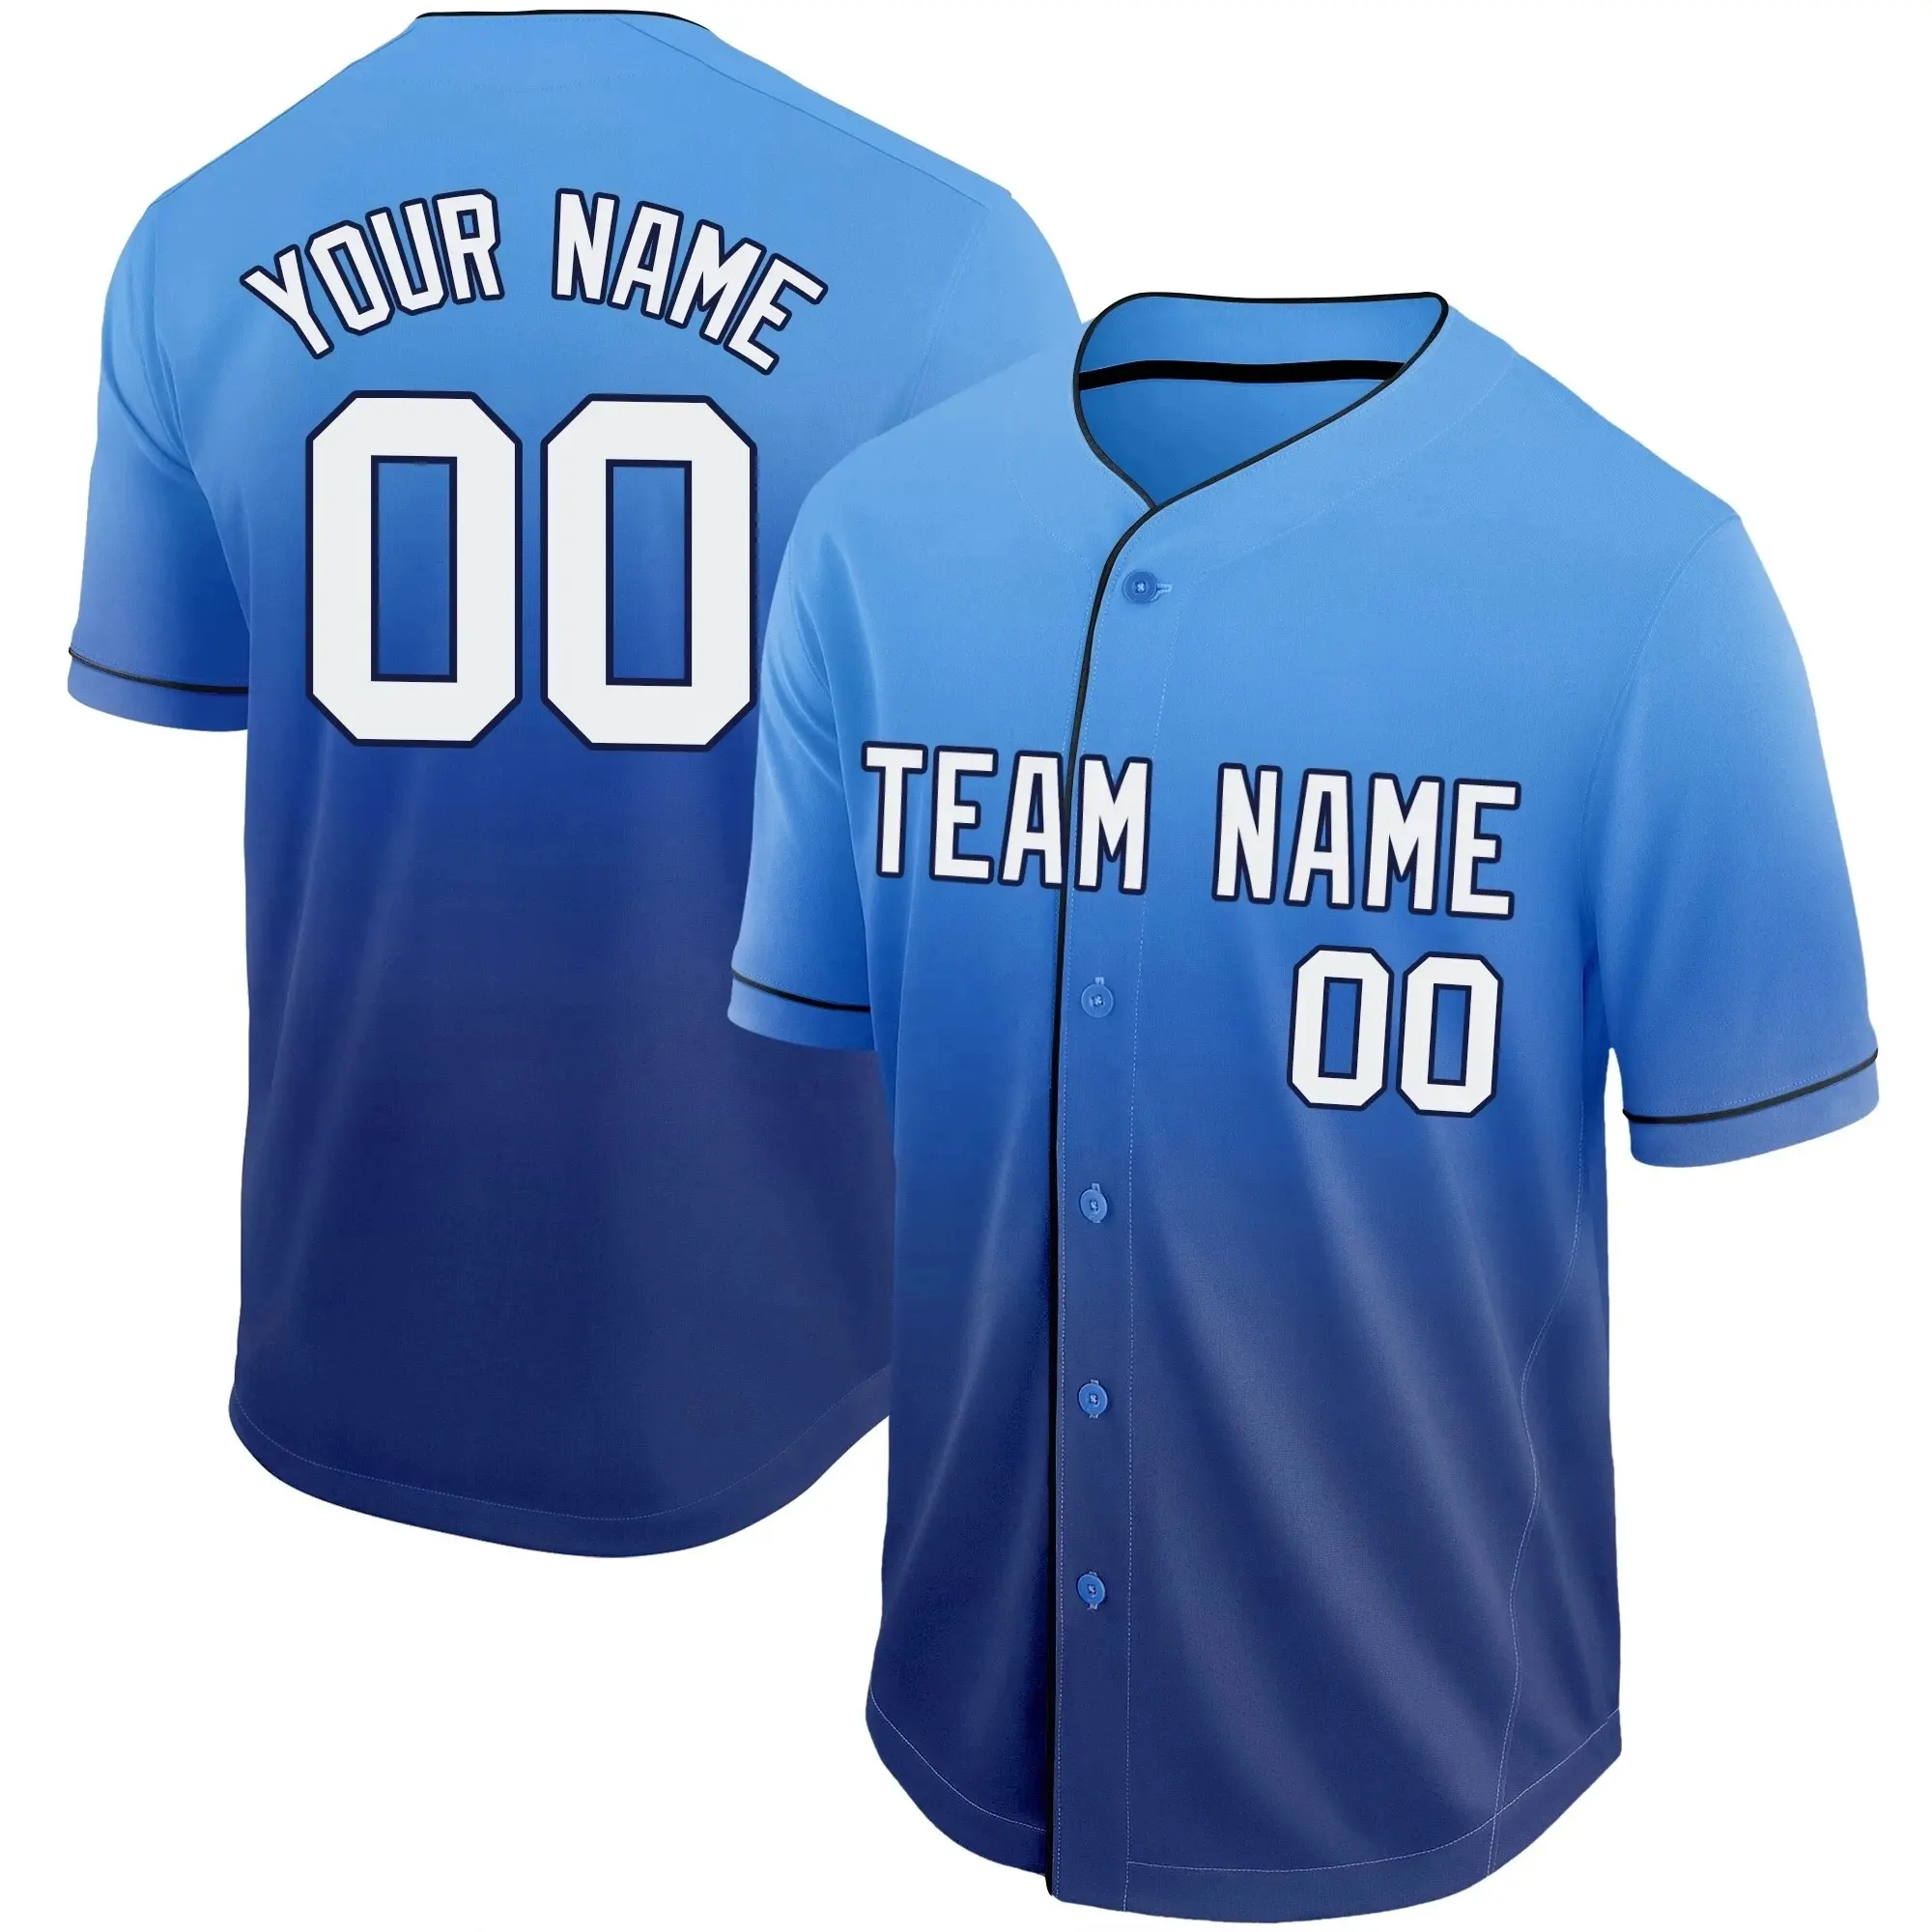 Conjunto de uniformes Diseño barato Sus propios diseños Hombres Azul Sublimado personalizado Mejor desgaste de béisbol y softbol